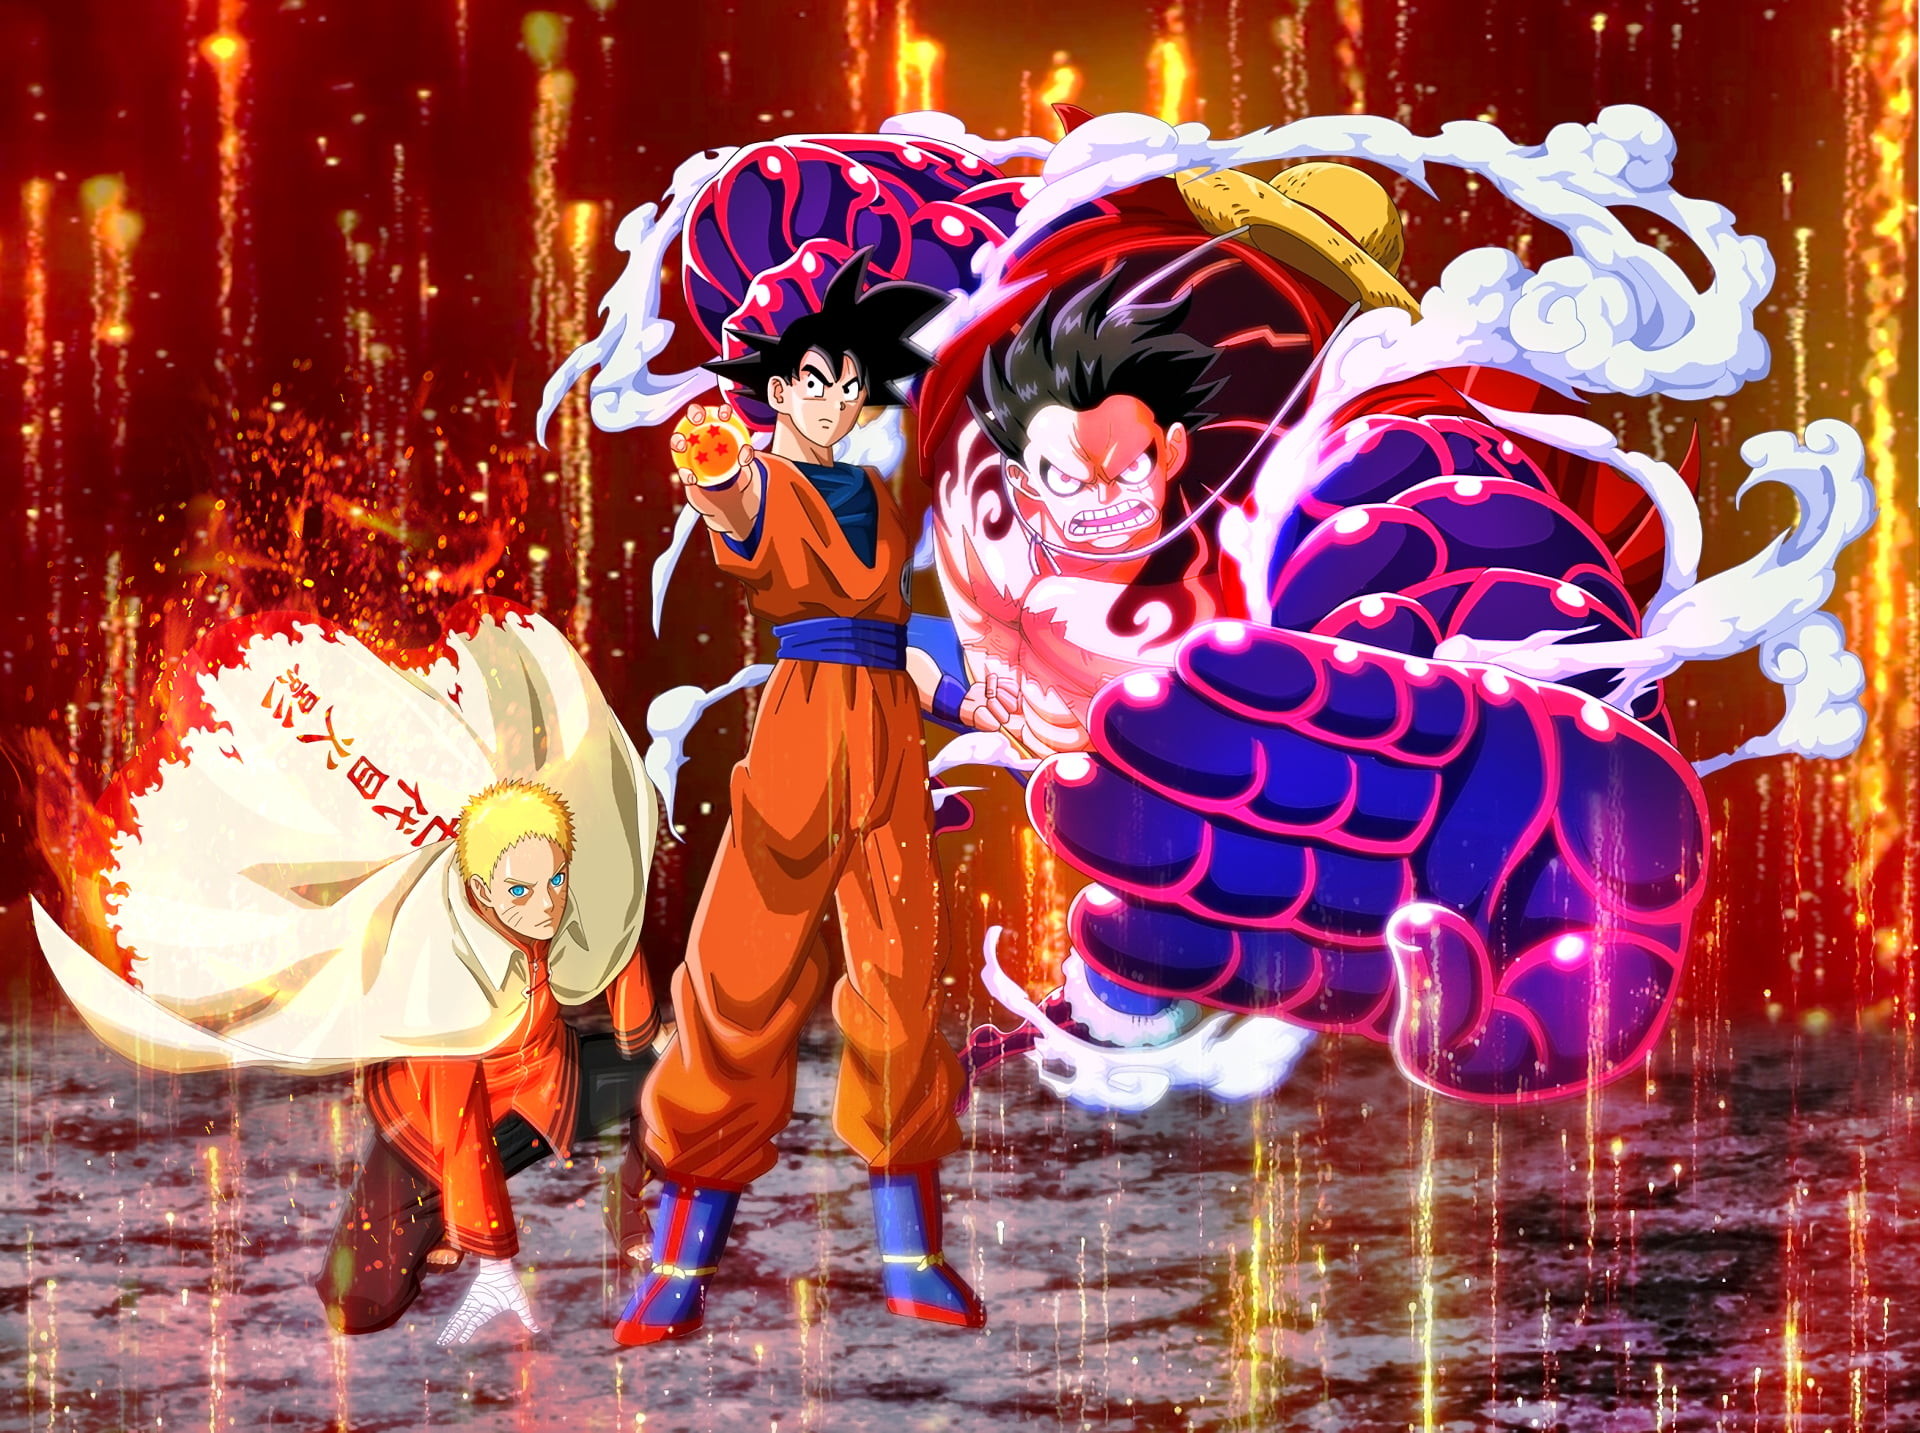 Goku và Naruto Wallpaper sẽ đem lại cho bạn một món quà giá trị. Bộ tranh nền này kết hợp hai nhân vật được yêu thích nhất của anime một cách tuyệt vời. Hình nền Goku và Naruto Wallpaper sẽ đưa bạn đến một thế giới đầy cảm xúc.